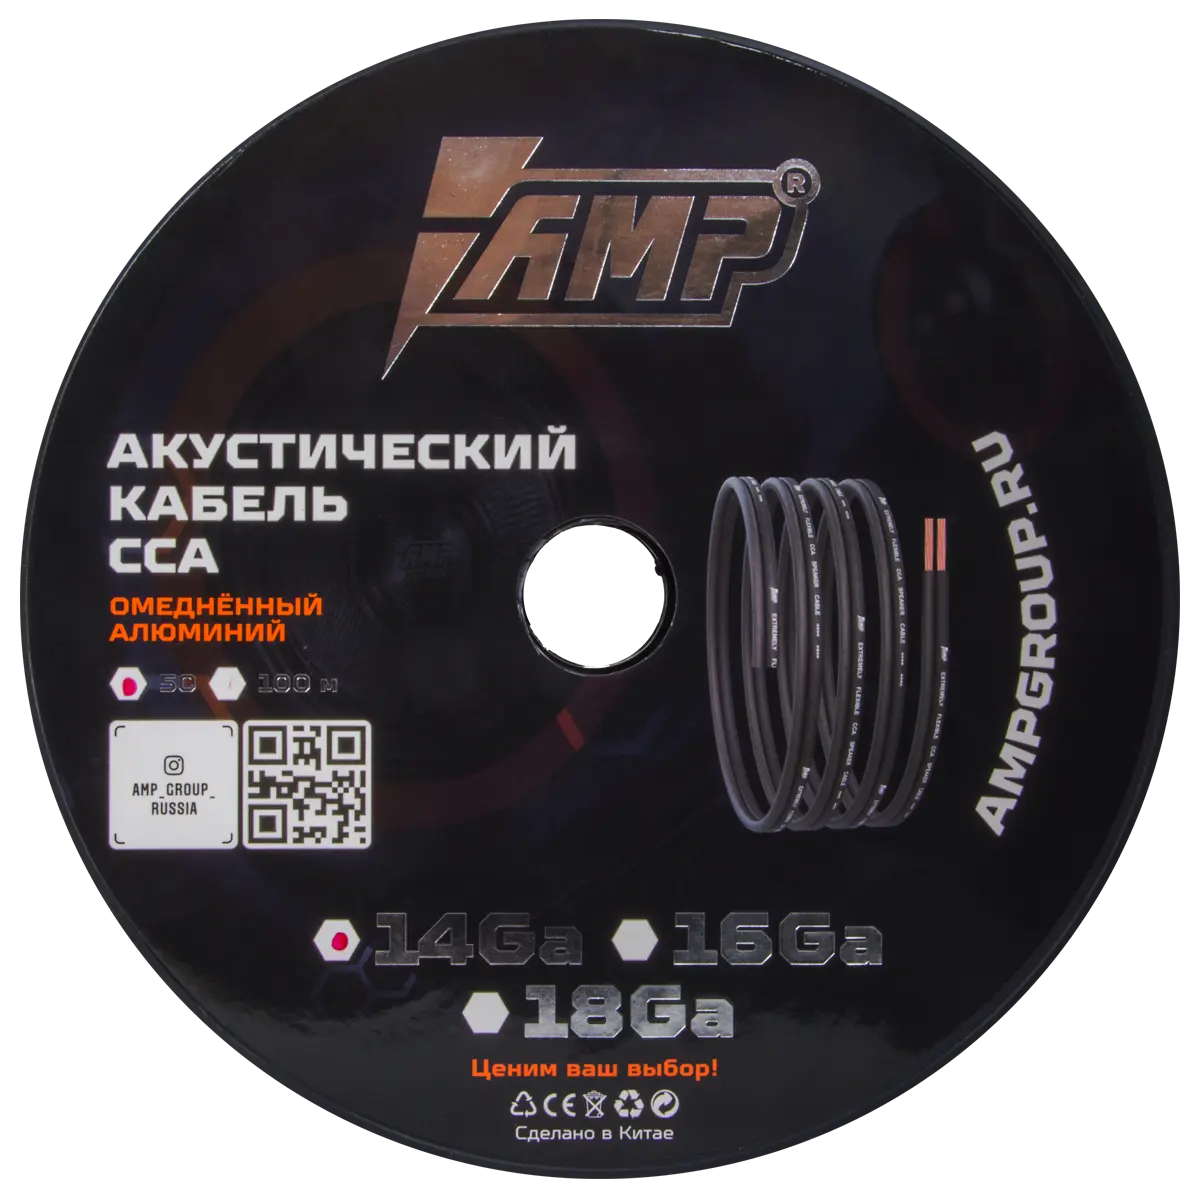 Провод акустический AMP CCA Ultraflexible 14Ga алюминий - 1 метр купить в интернет магазине AMPGROUP.  Провод акустический AMP CCA Ultraflexible 14Ga алюминий - 1 метр   цены, большой каталог, новинки.
